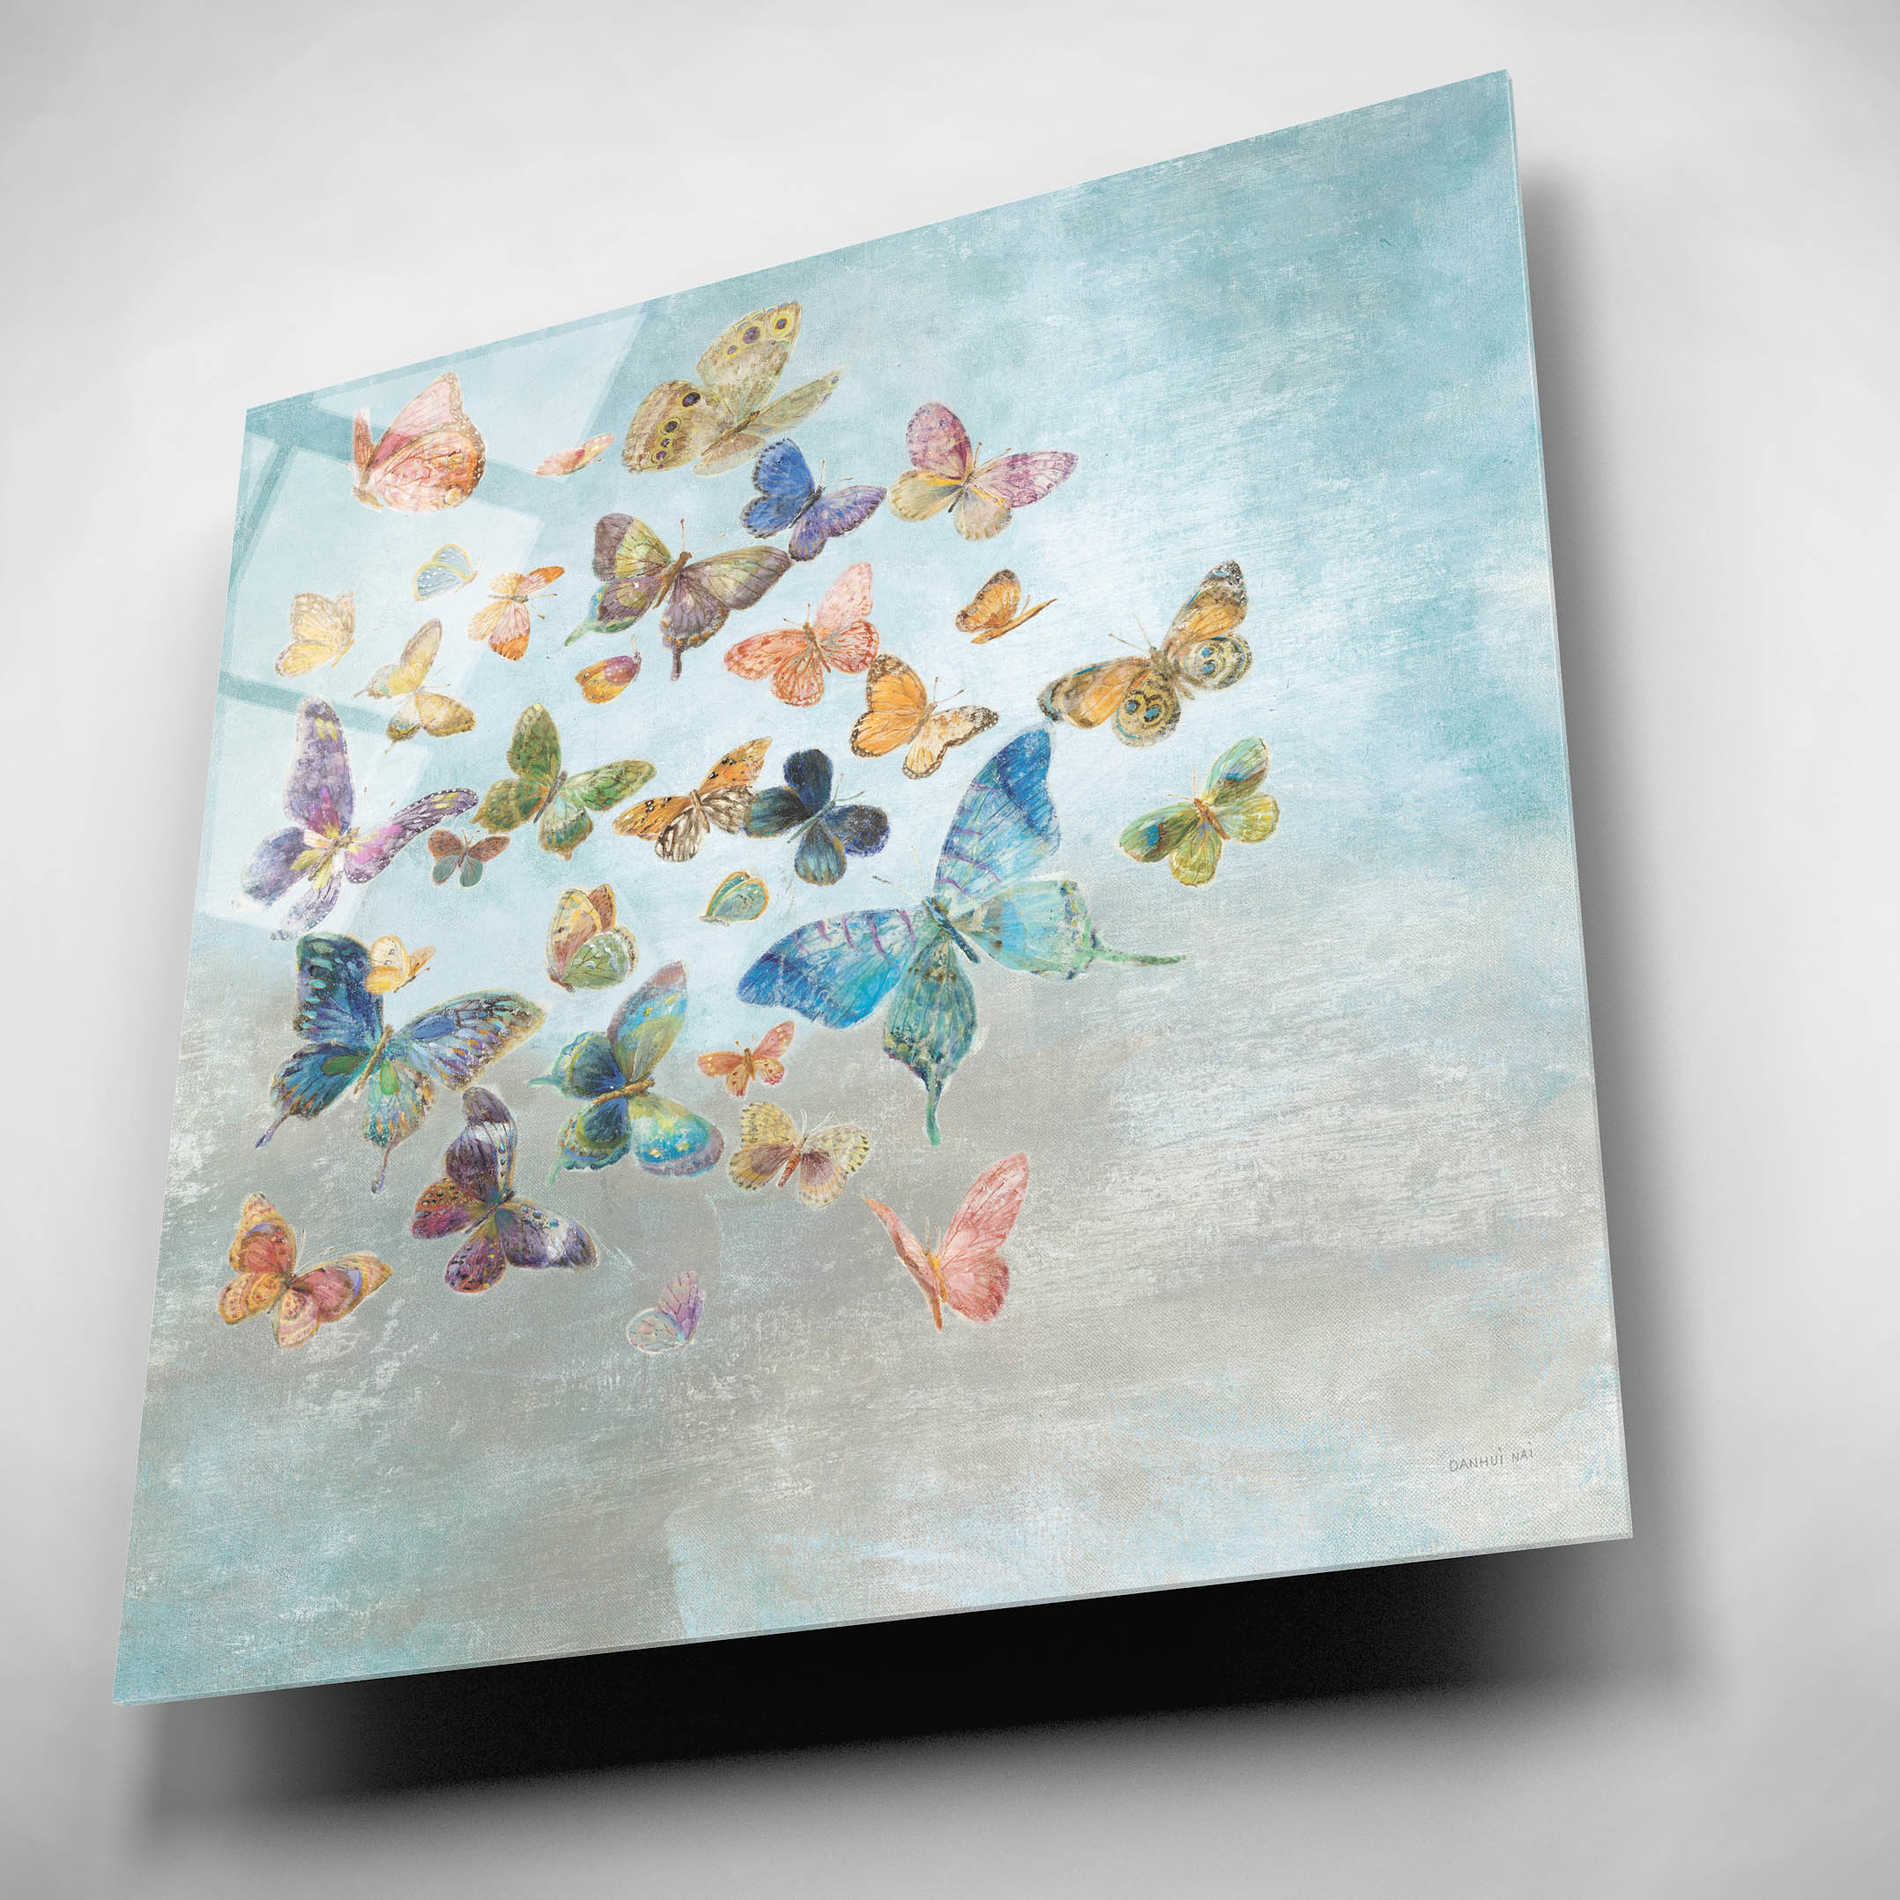 Epic Art 'Beautiful Butterflies v3 Square' by Danhui Nai, Acrylic Glass Wall Art,12x12